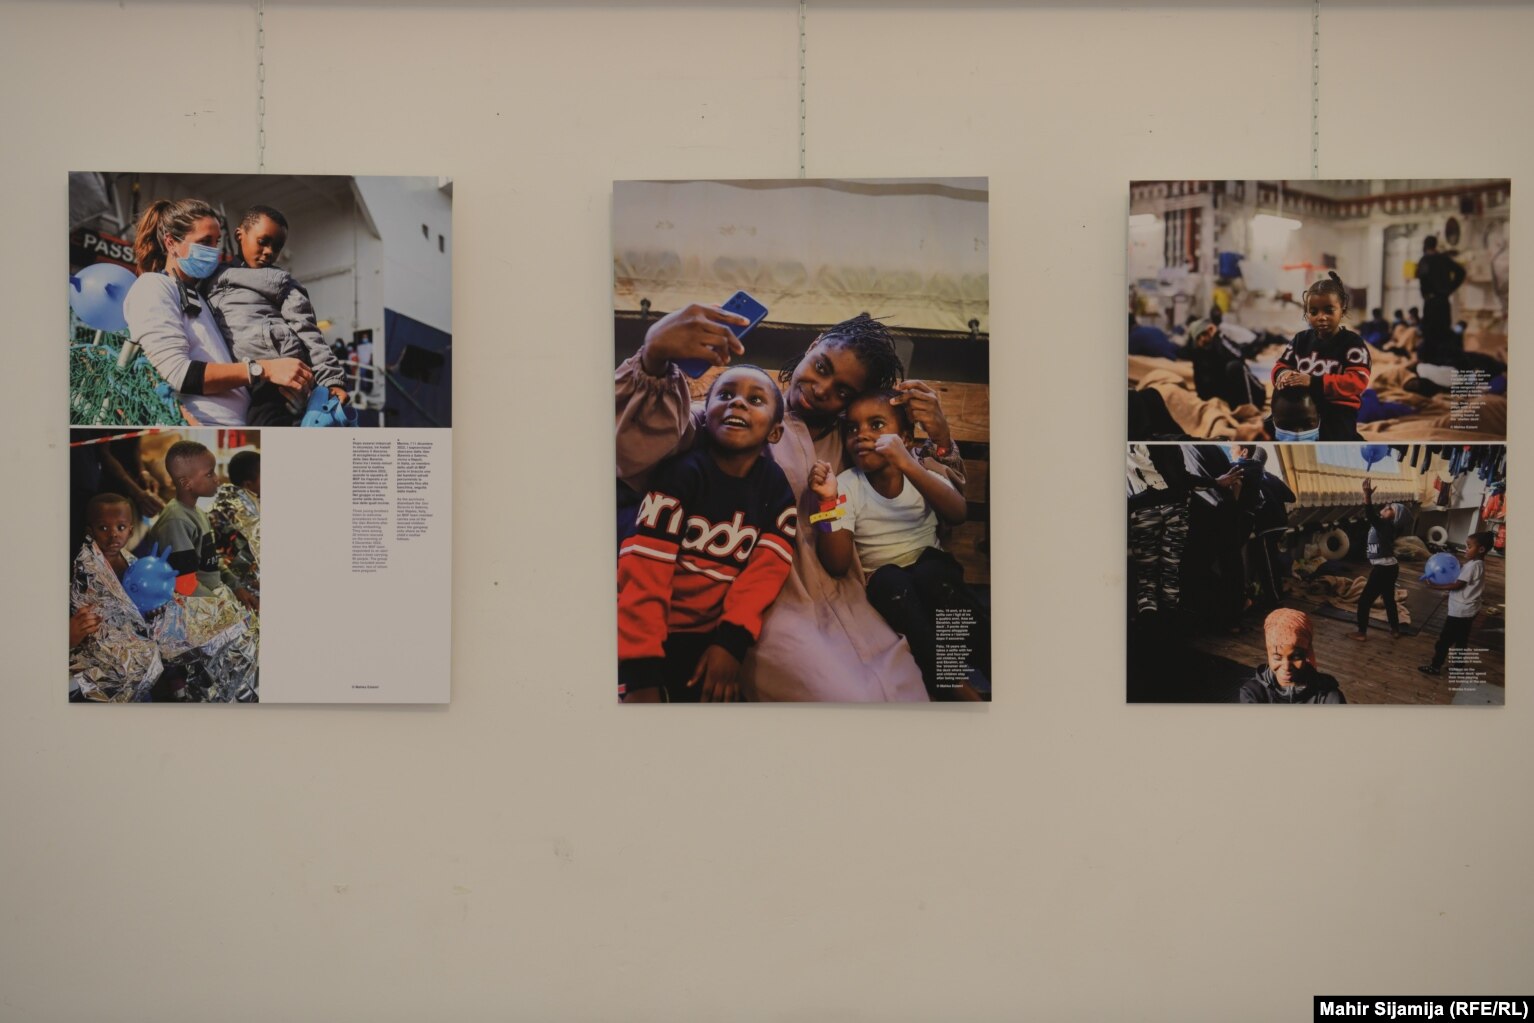 Në ekspozitë ka shumë fotografi të grave dhe fëmijëve të shpëtuar në det.